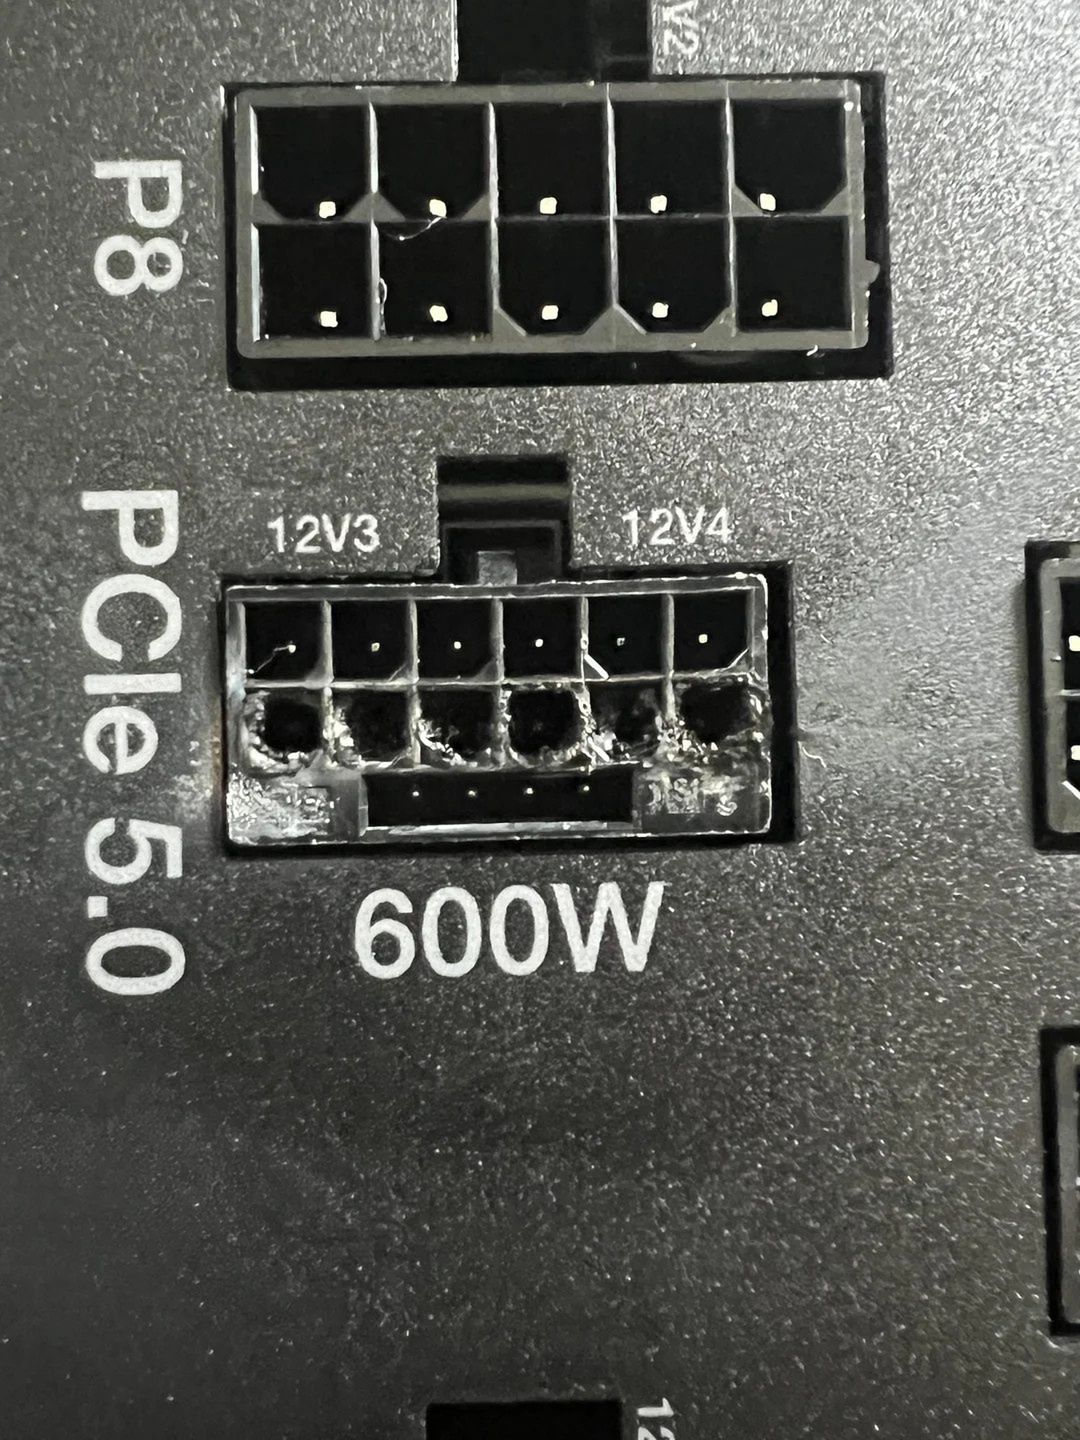 Stopione gniazdo PCIe 5.0 (12VHPWR) w zasilaczu be quiet! Dark Power 13 1000W.